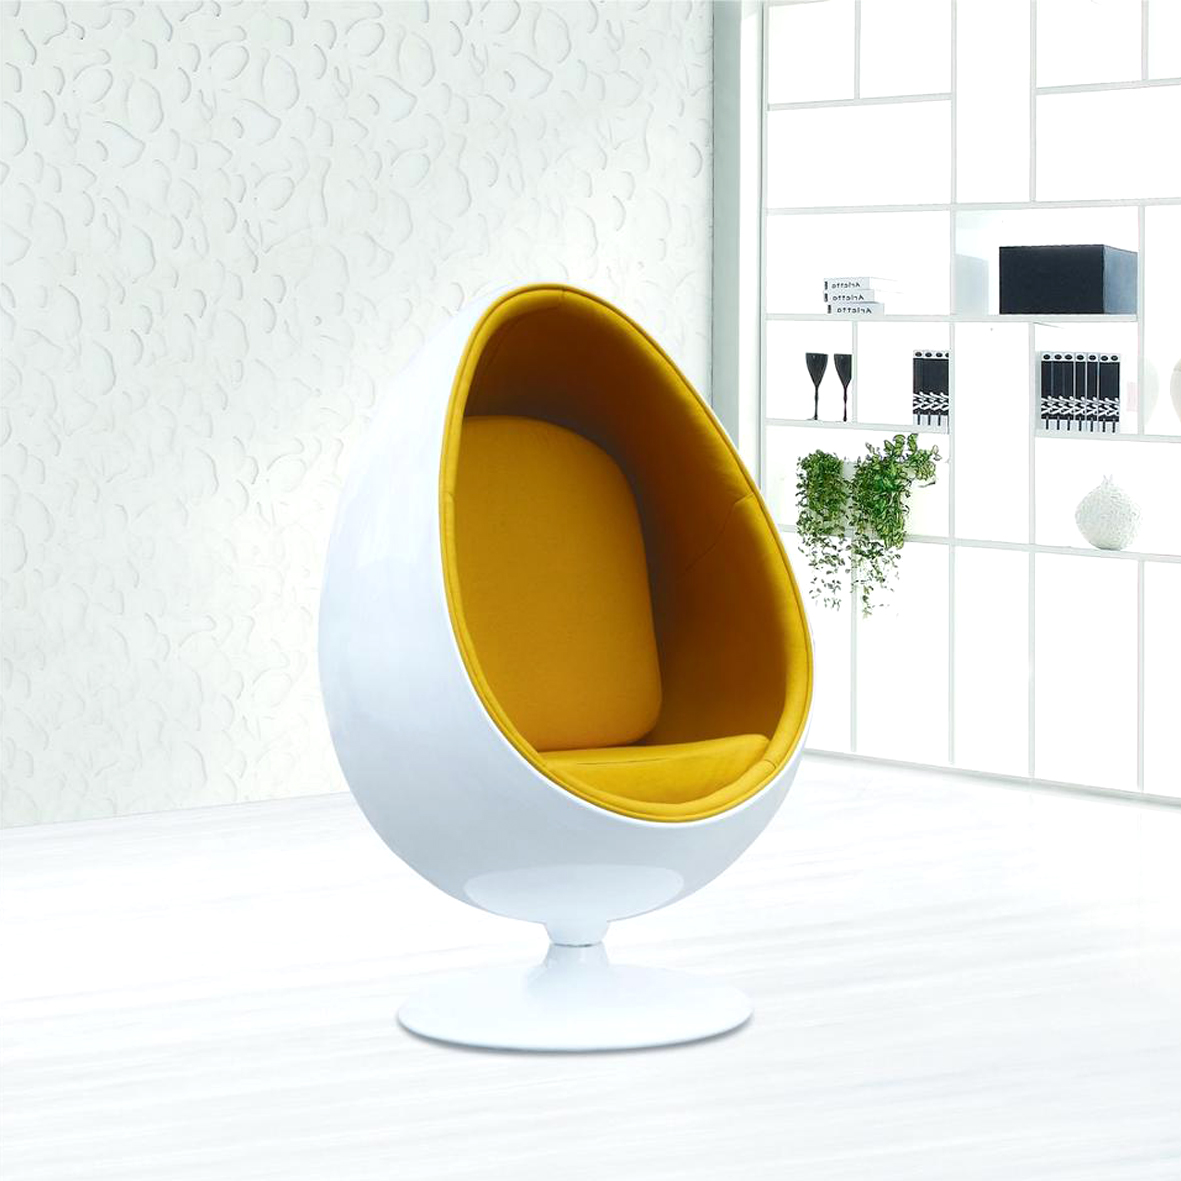 крутящееся кресло яйцо для детей